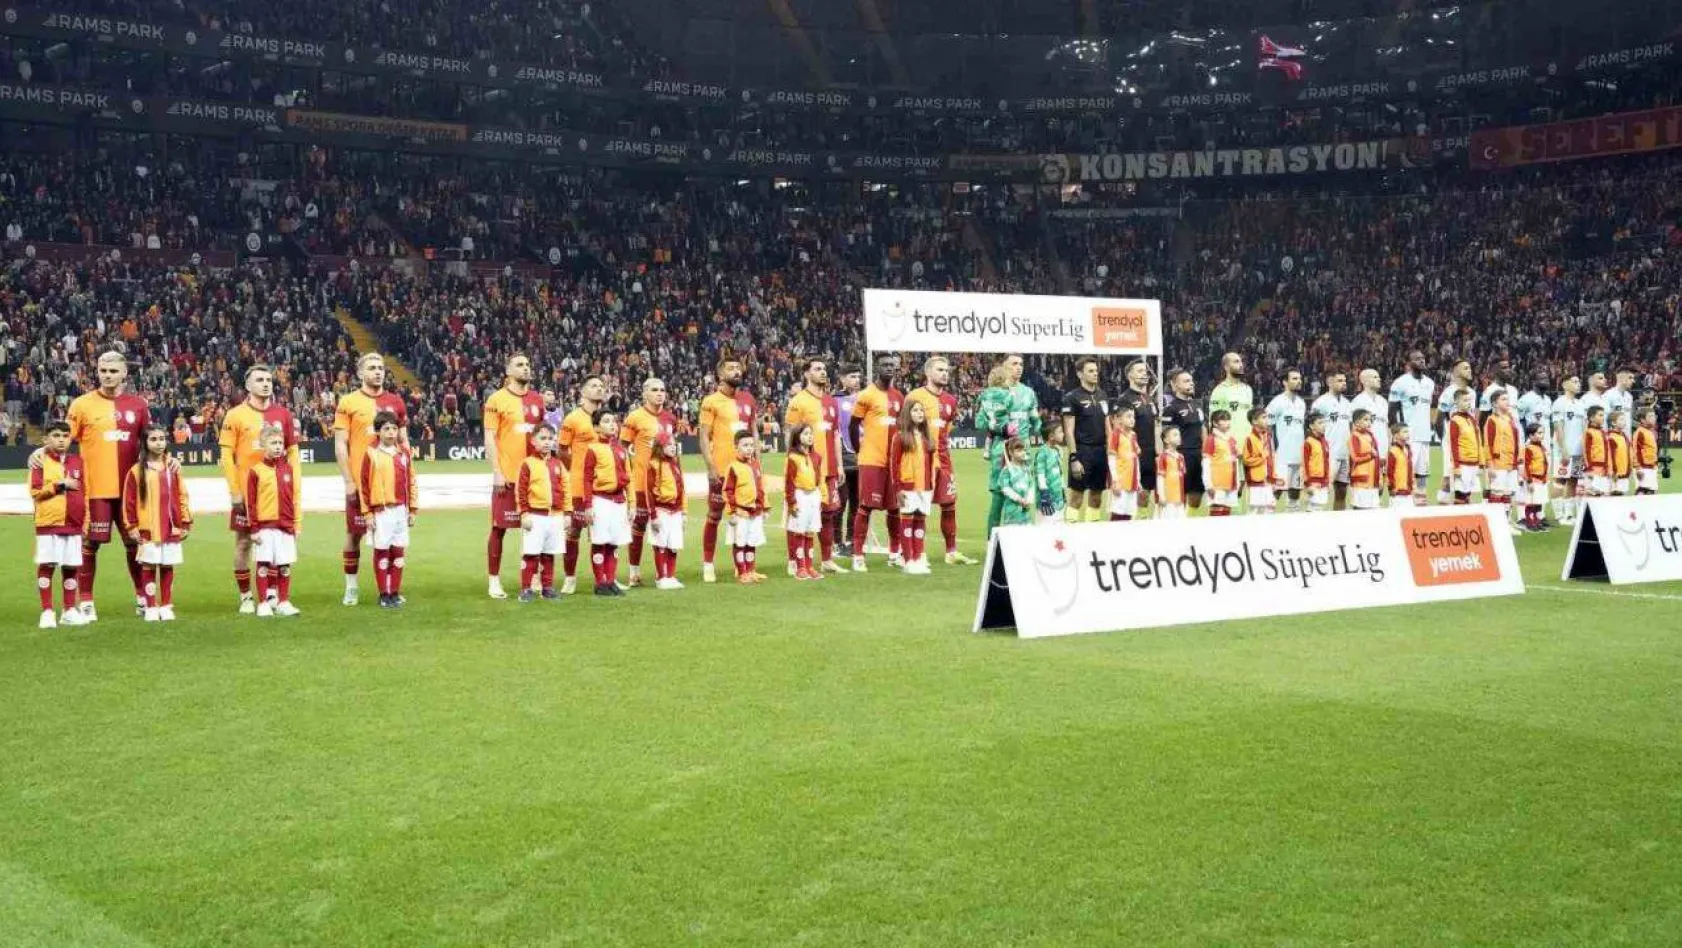 Trendyol Süper Lig: Galatasaray: 0 - RAMS Başakşehir: 0 (Maç devam ediyor)